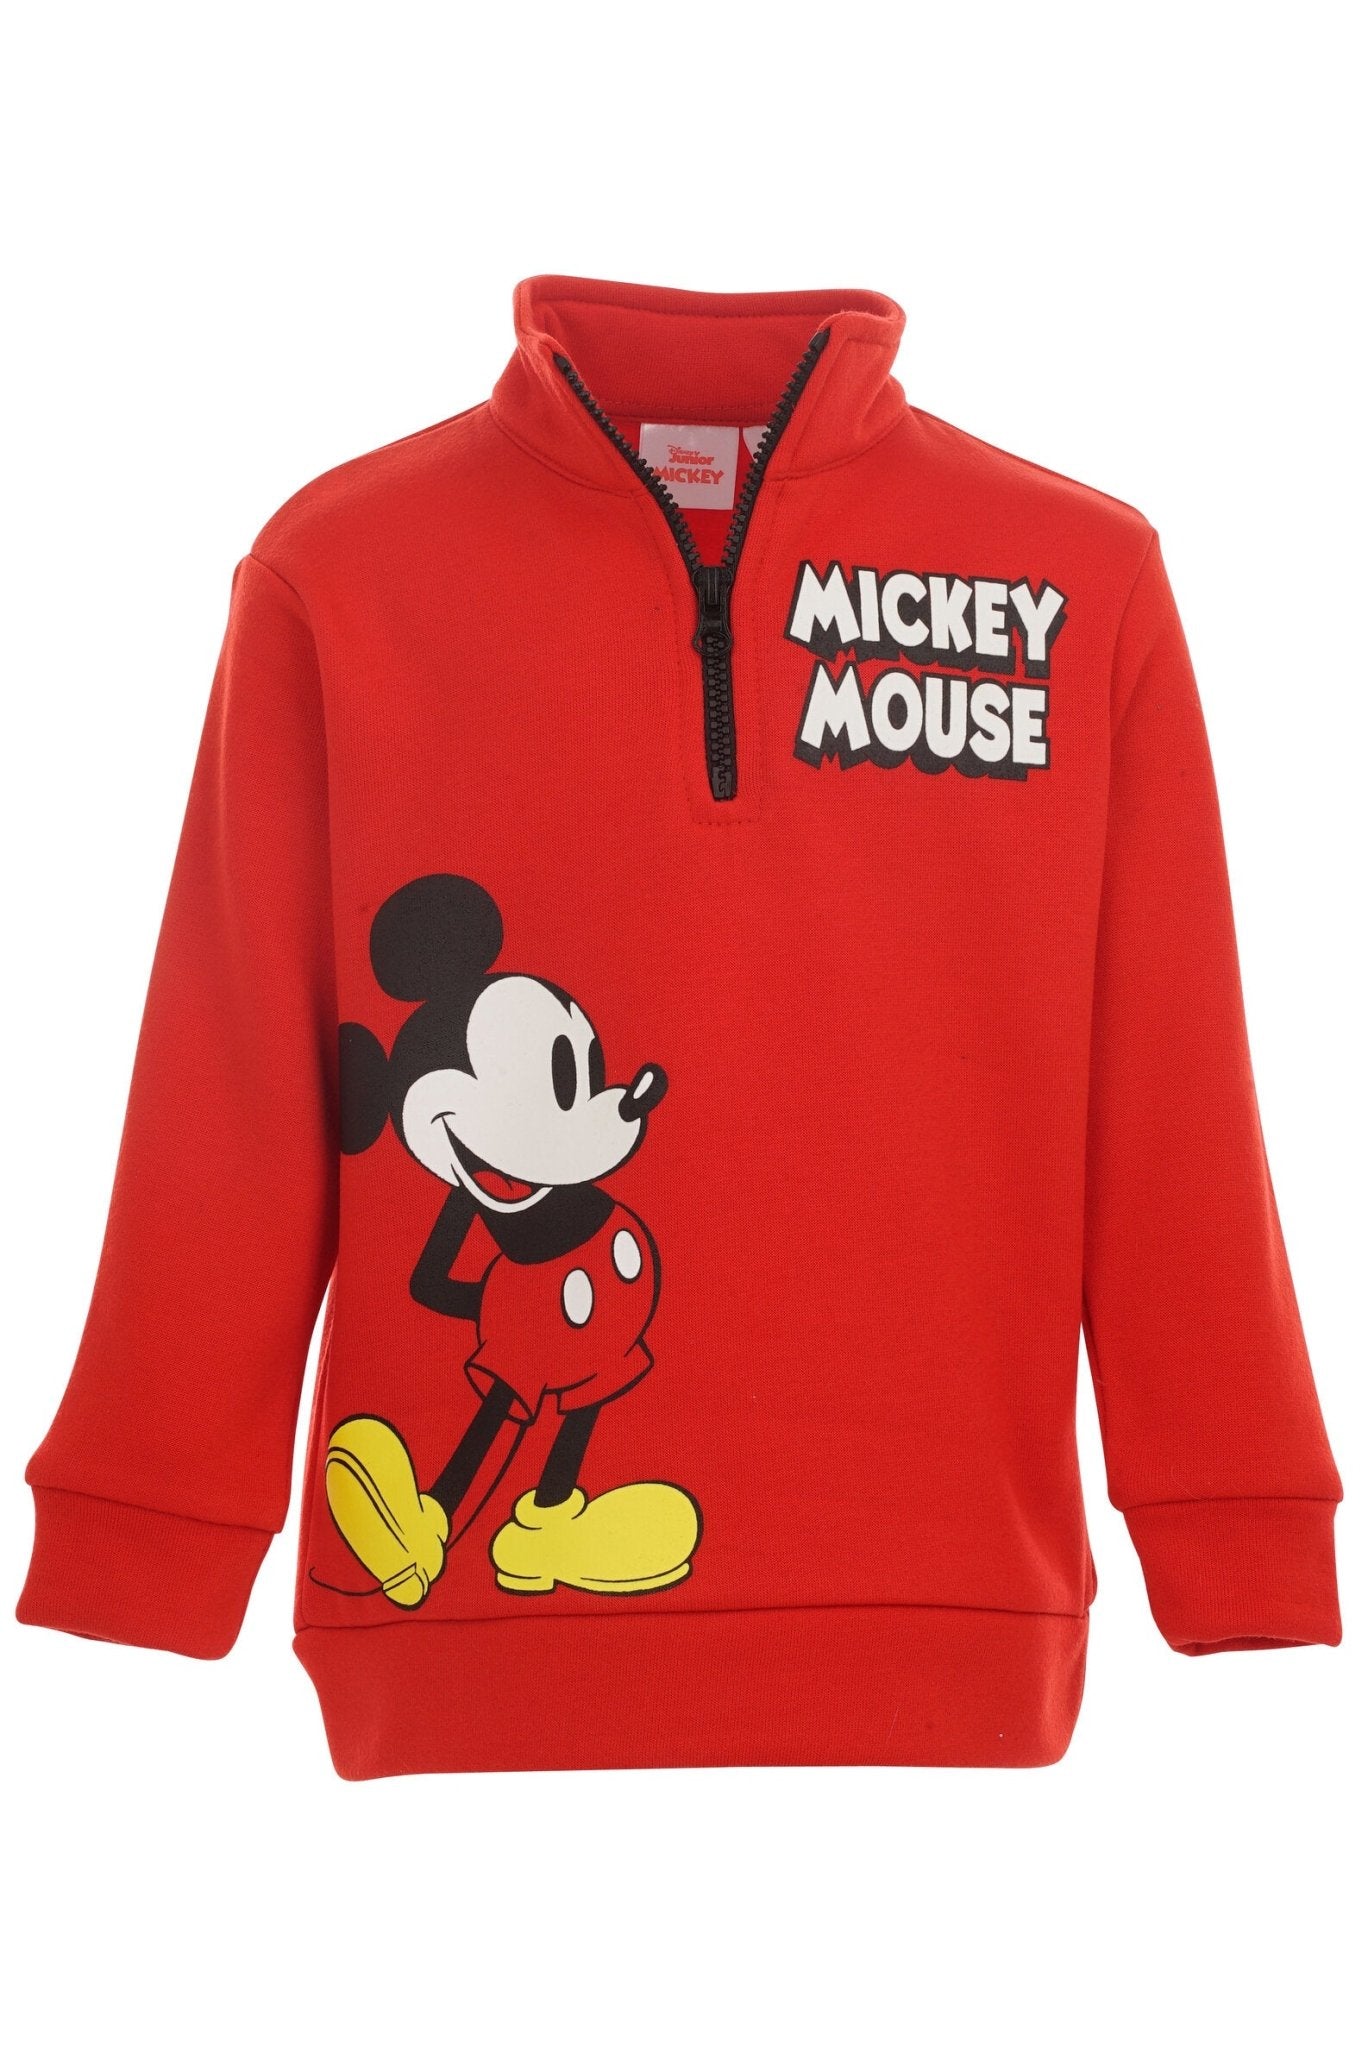 Disney Mickey Mouse Zip Up Sweatshirt and Pants Set - imagikids